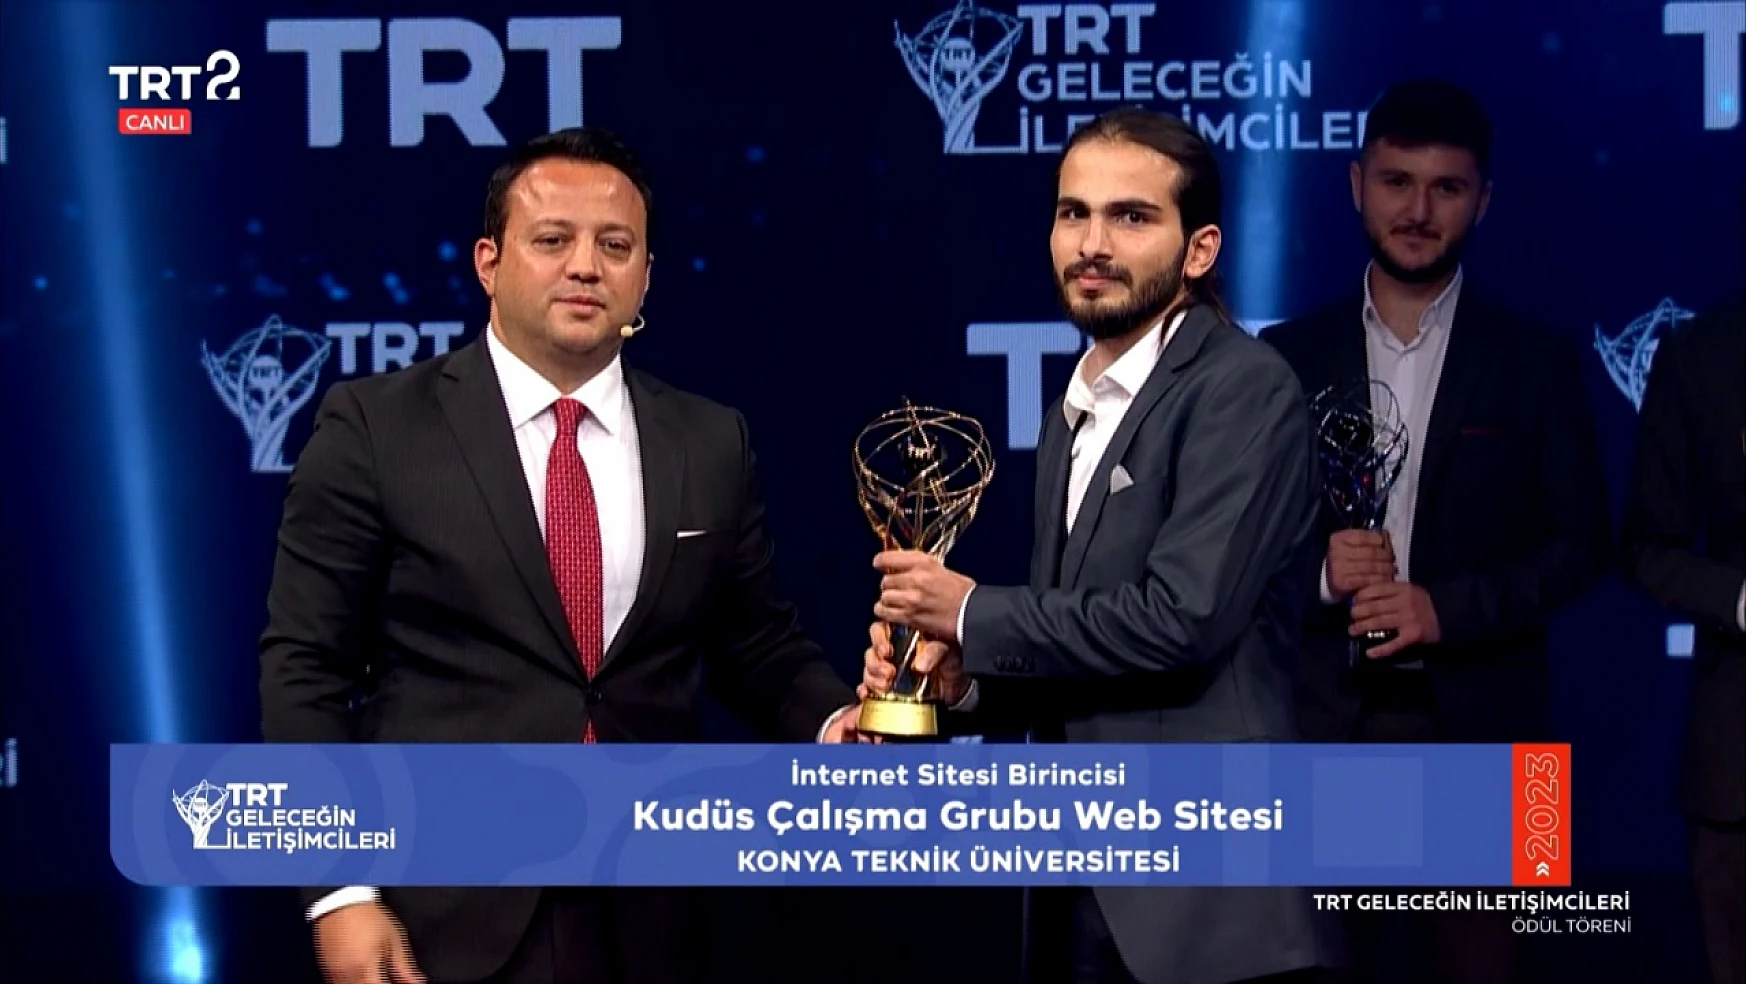 Konya Büyükşehir Kudüs Çalışma Grubuna 'TRT geleceğin İletişimcileri' Yaraşmasında Birincilik Ödülü